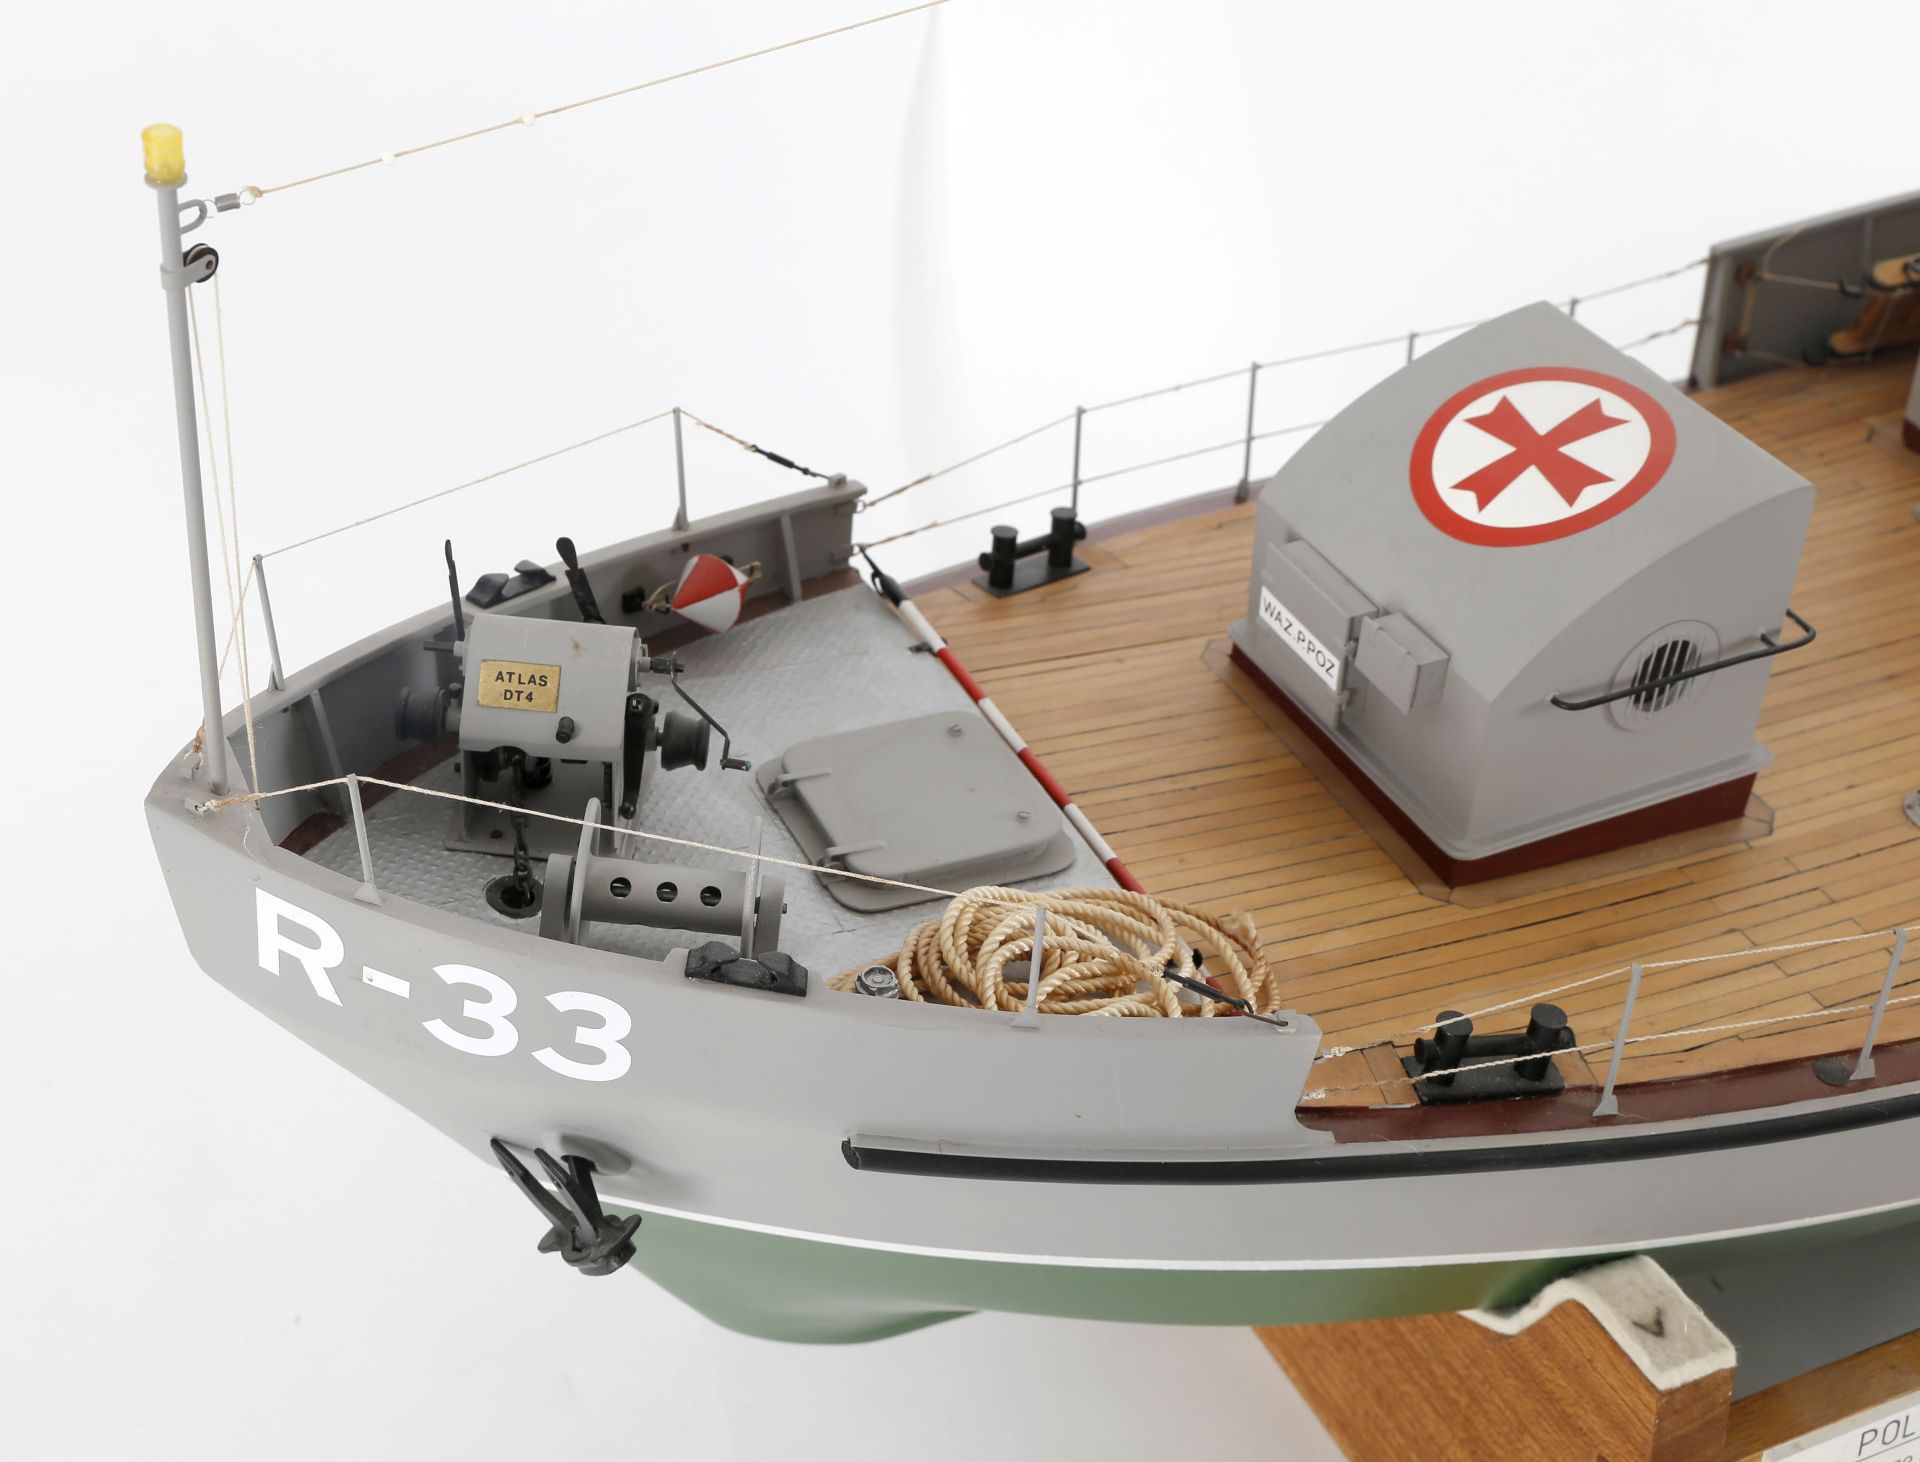 Modell des polnischen Rettungsbootes 'R 33' - Image 6 of 7